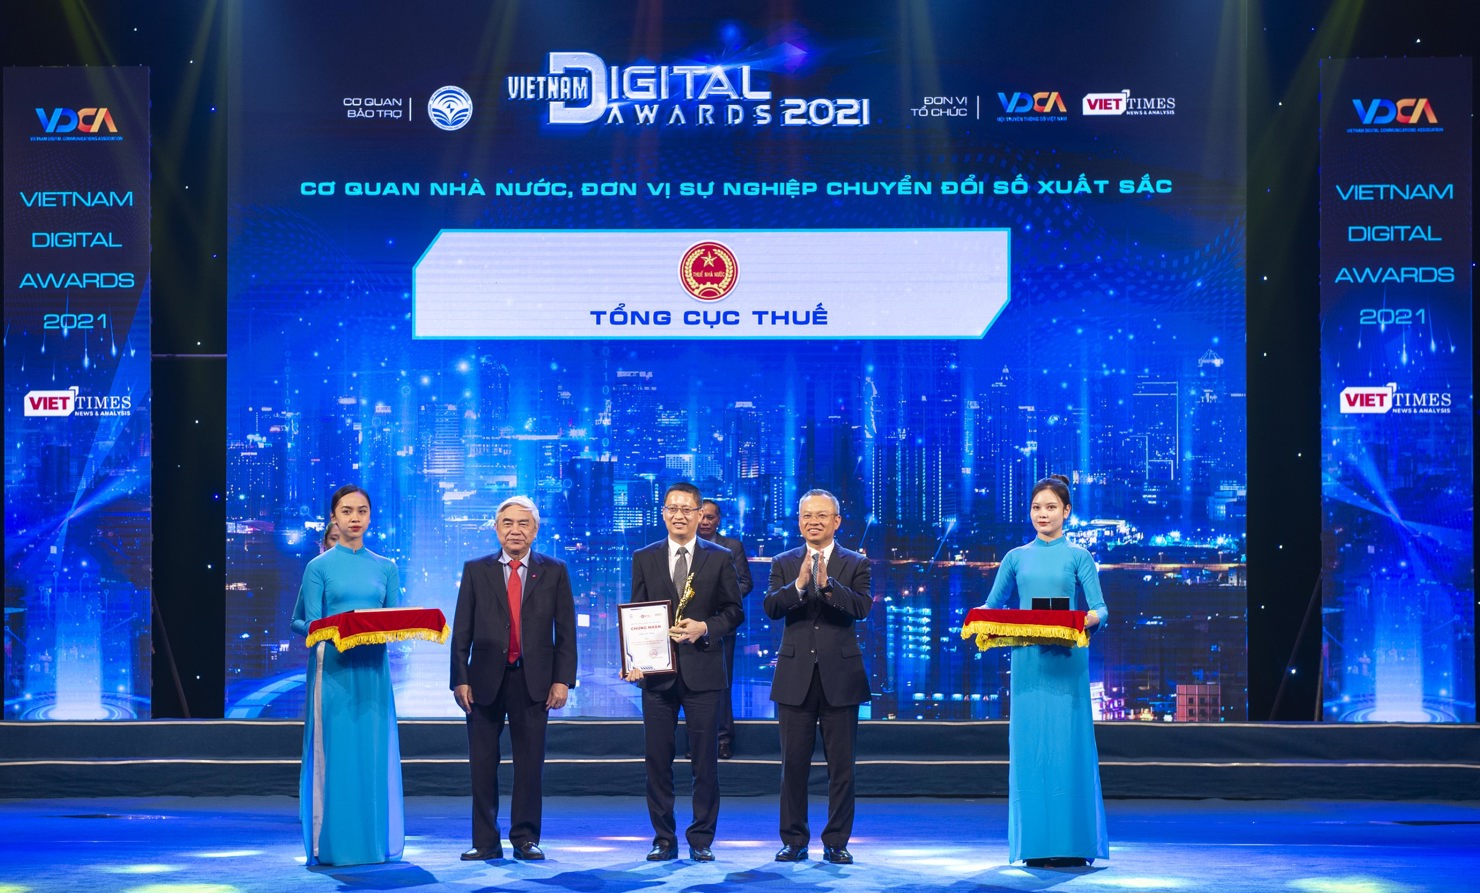 Ông Phạm Quang Toàn - Cục trưởng Cục công nghệ thông tin đại diện cho Tổng cục Thuế nhận giải thưởng.